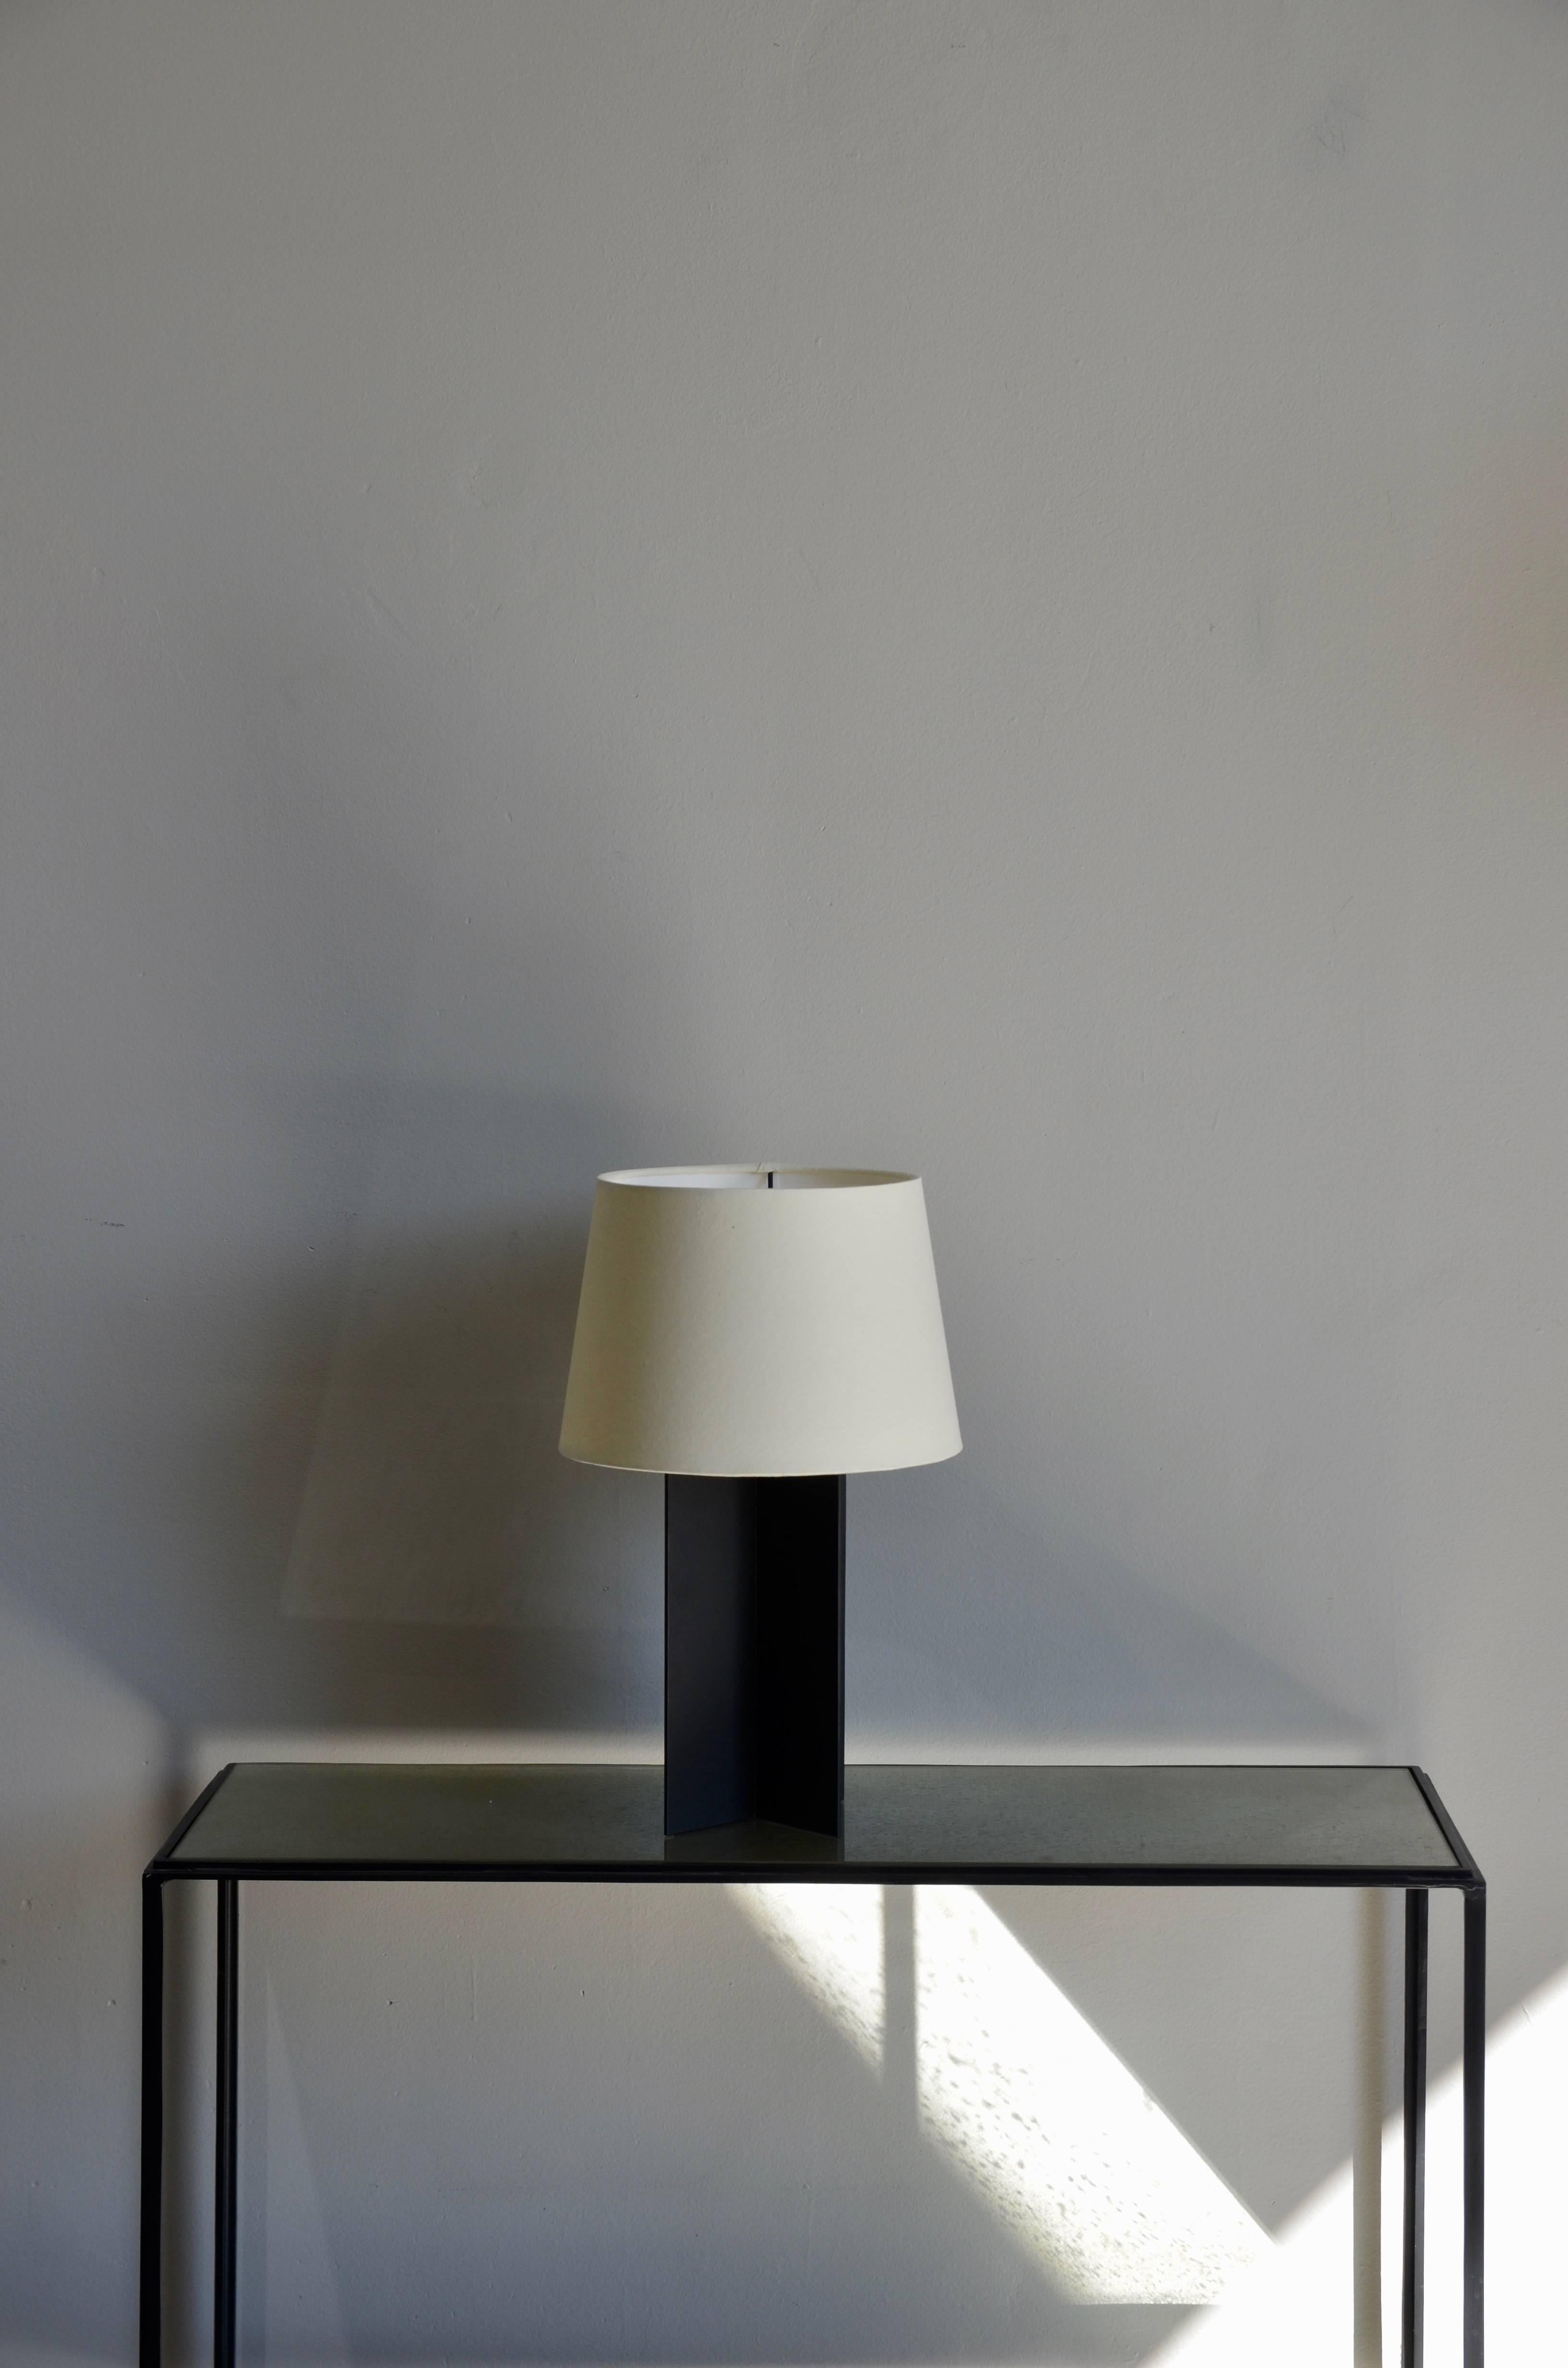 La lampe de table 'Croisillon' en acier noir mat de design Frères. Dans le style de Jean-Michel Frank. Abat-jour en parchemin crème personnalisé de style européen.

Cette lampe est exposée au Pebble Bar à New York.